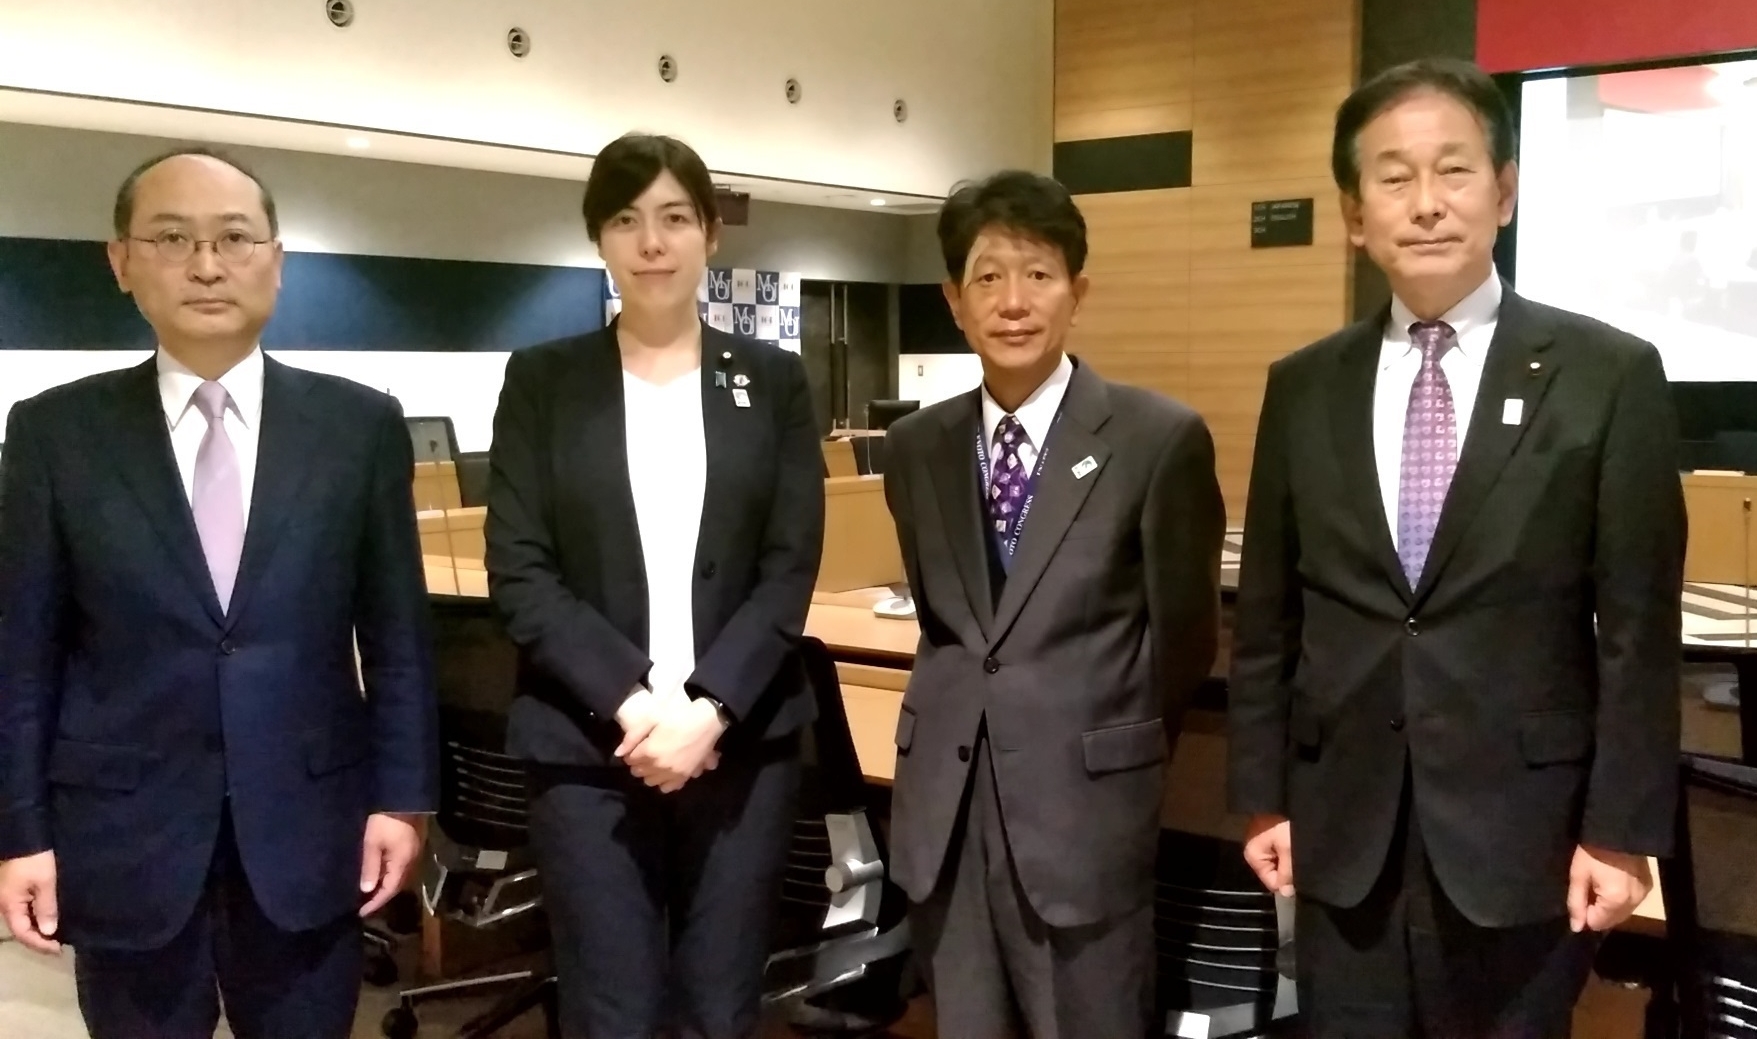 田所法務副大臣及び小野田法務大臣政務官が国際法務総合センターを調査しました。